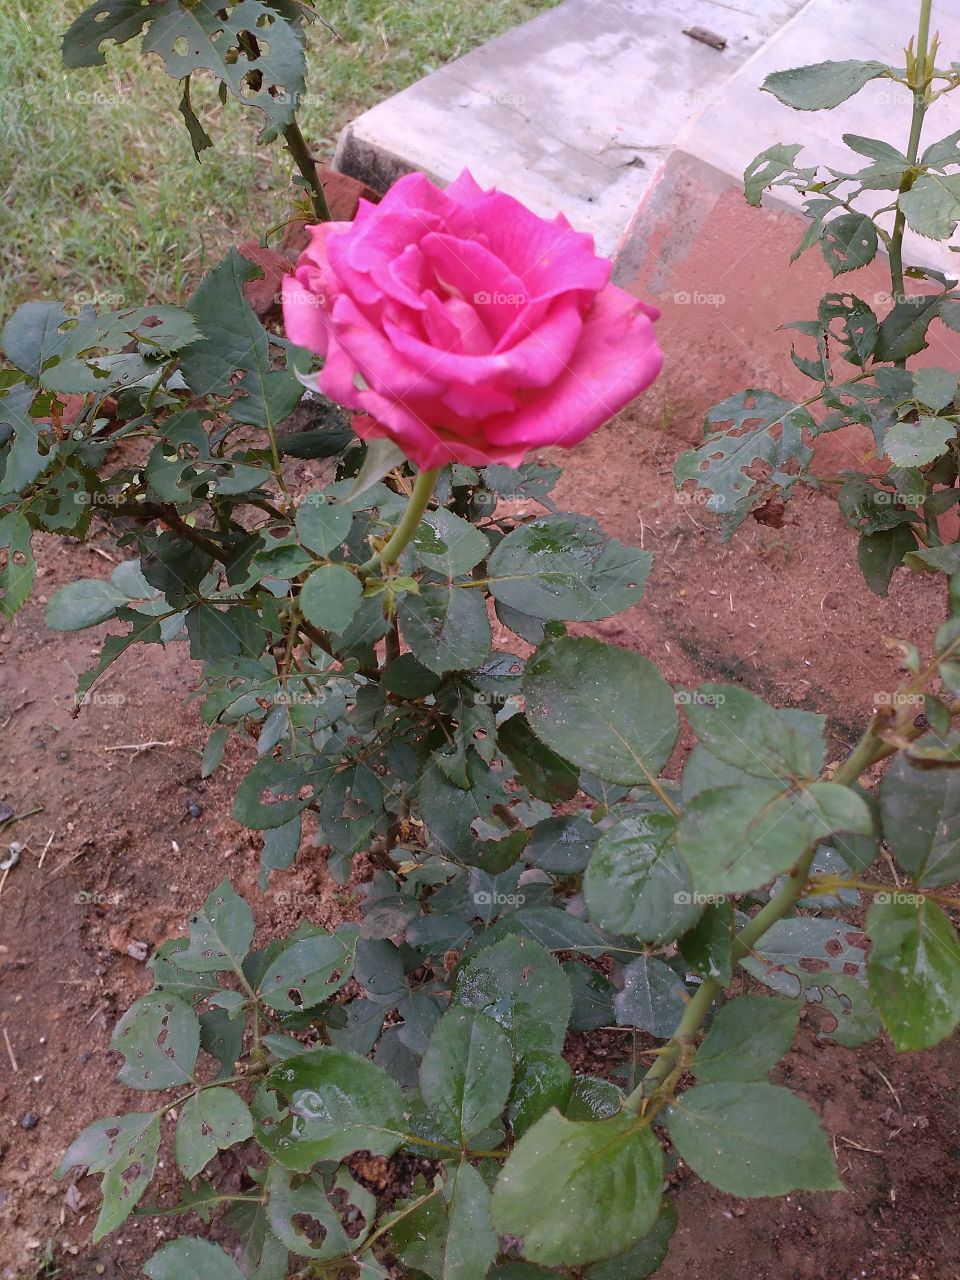 my garden
a beautiful pink flower